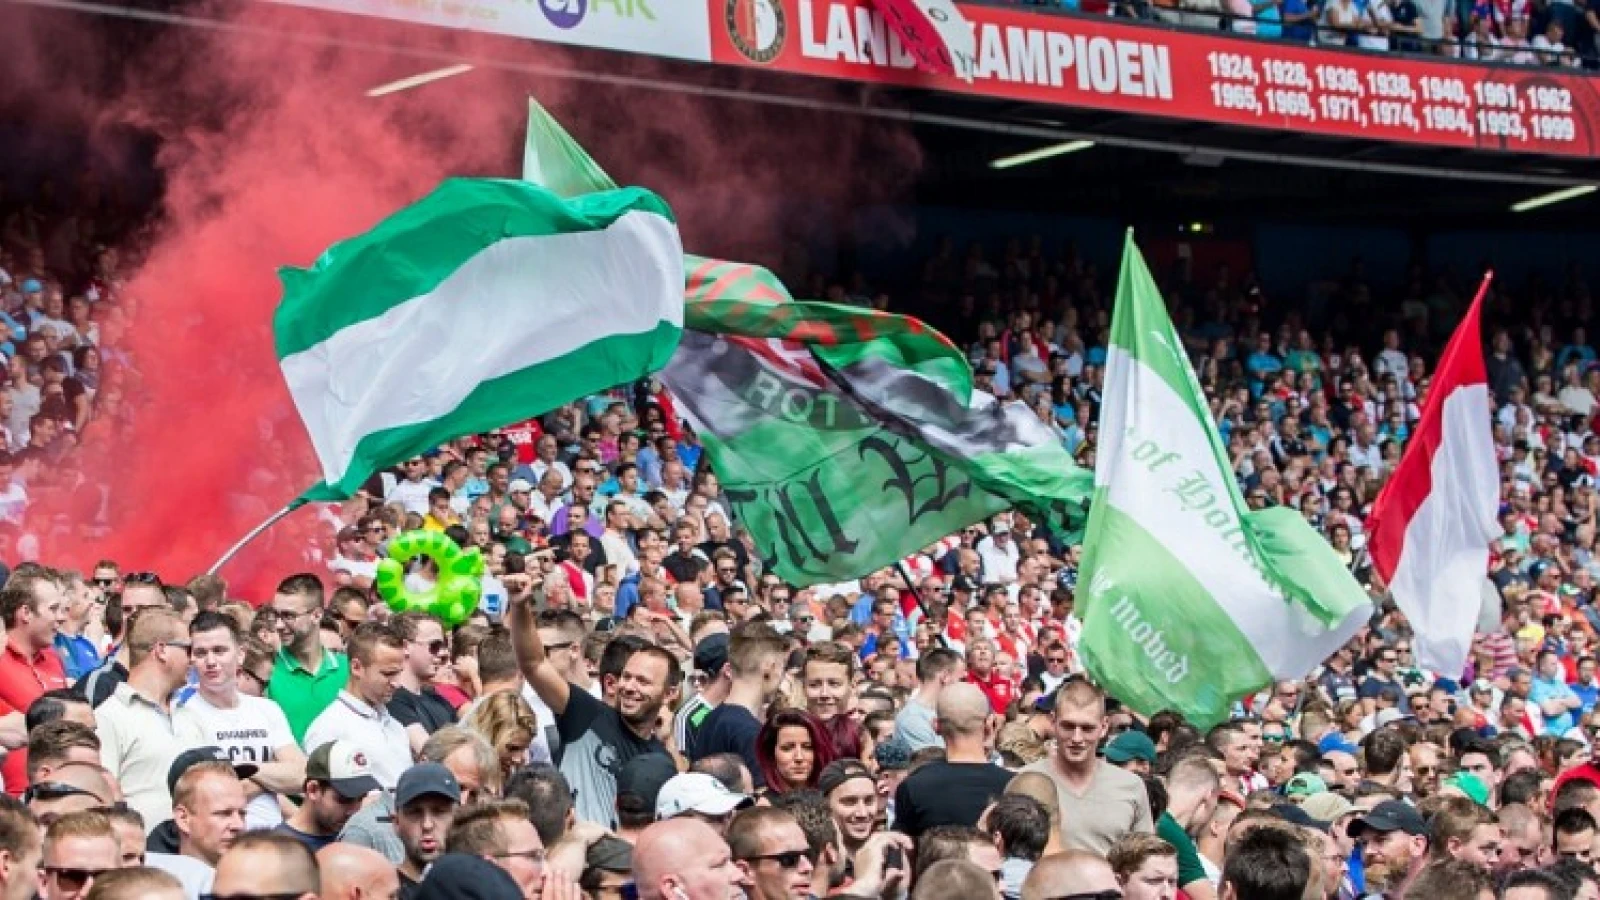 UPDATE: Sfeeractie toch goedgekeurd, Feyenoordsupporters zien er van af